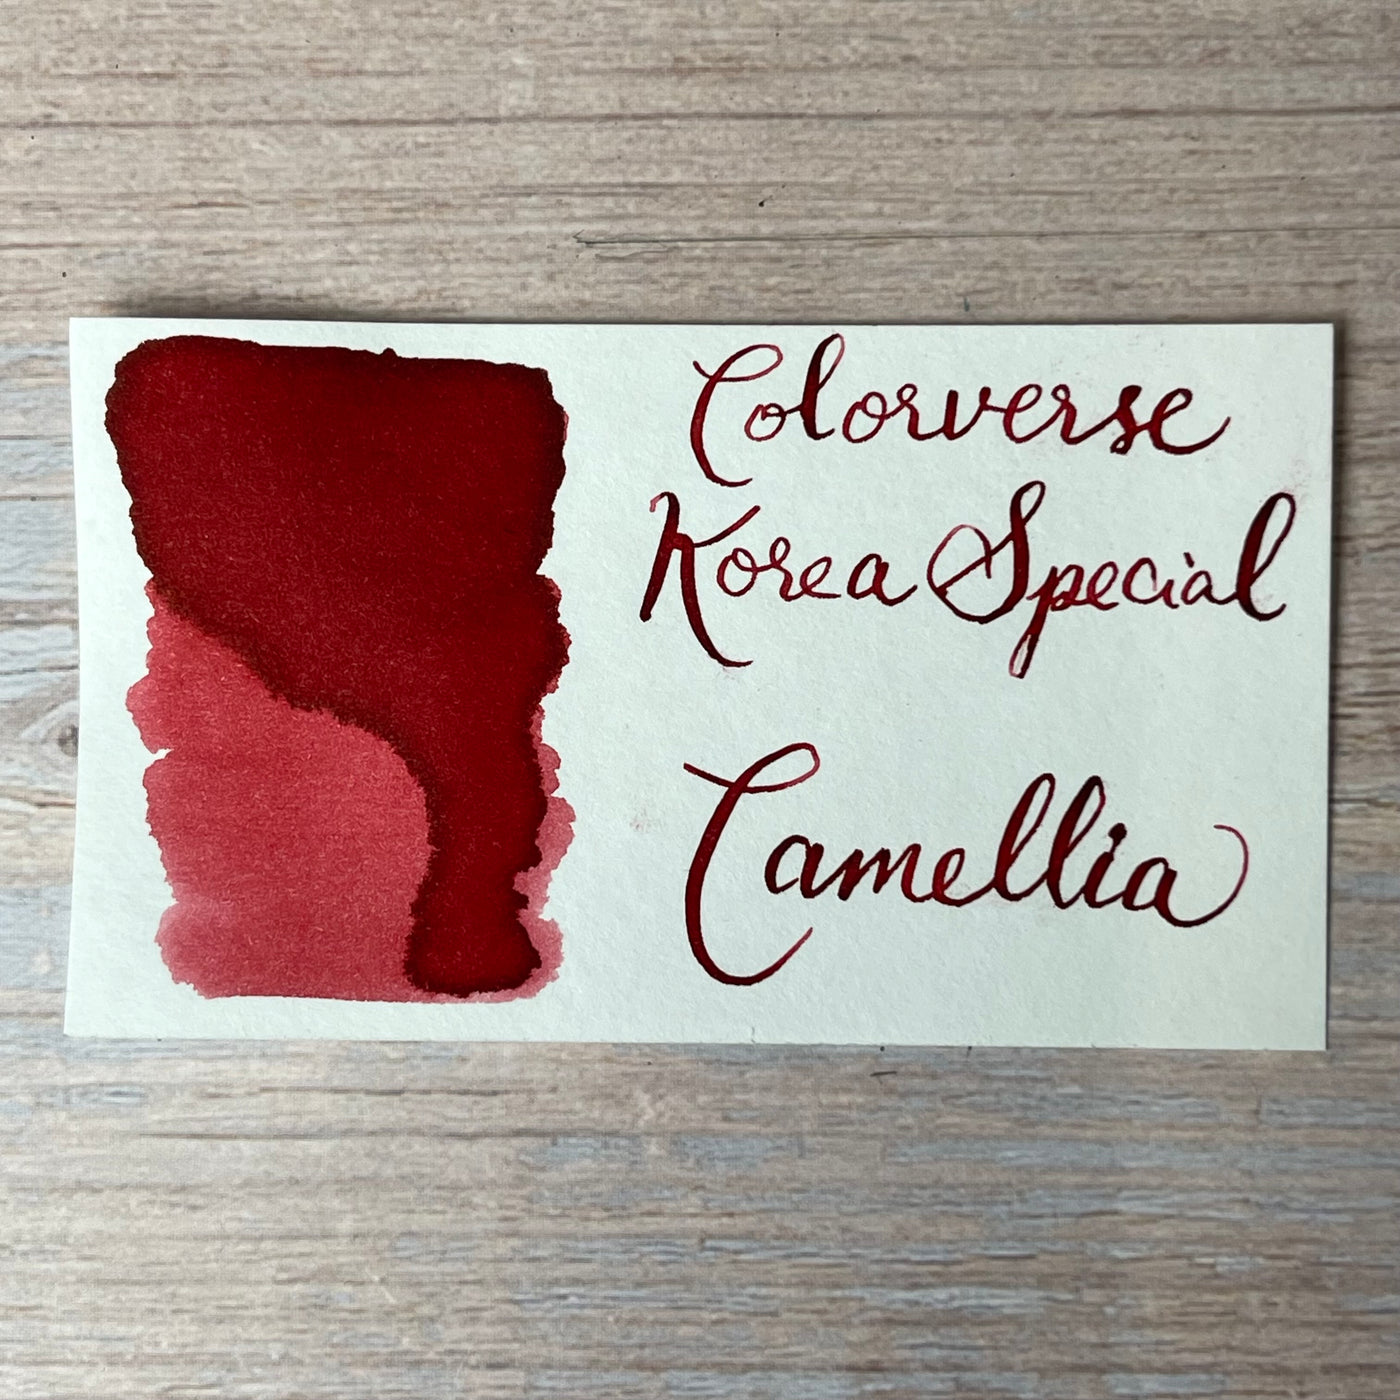 Colorverse 15ml Korea Special Bottled Ink - Camellia